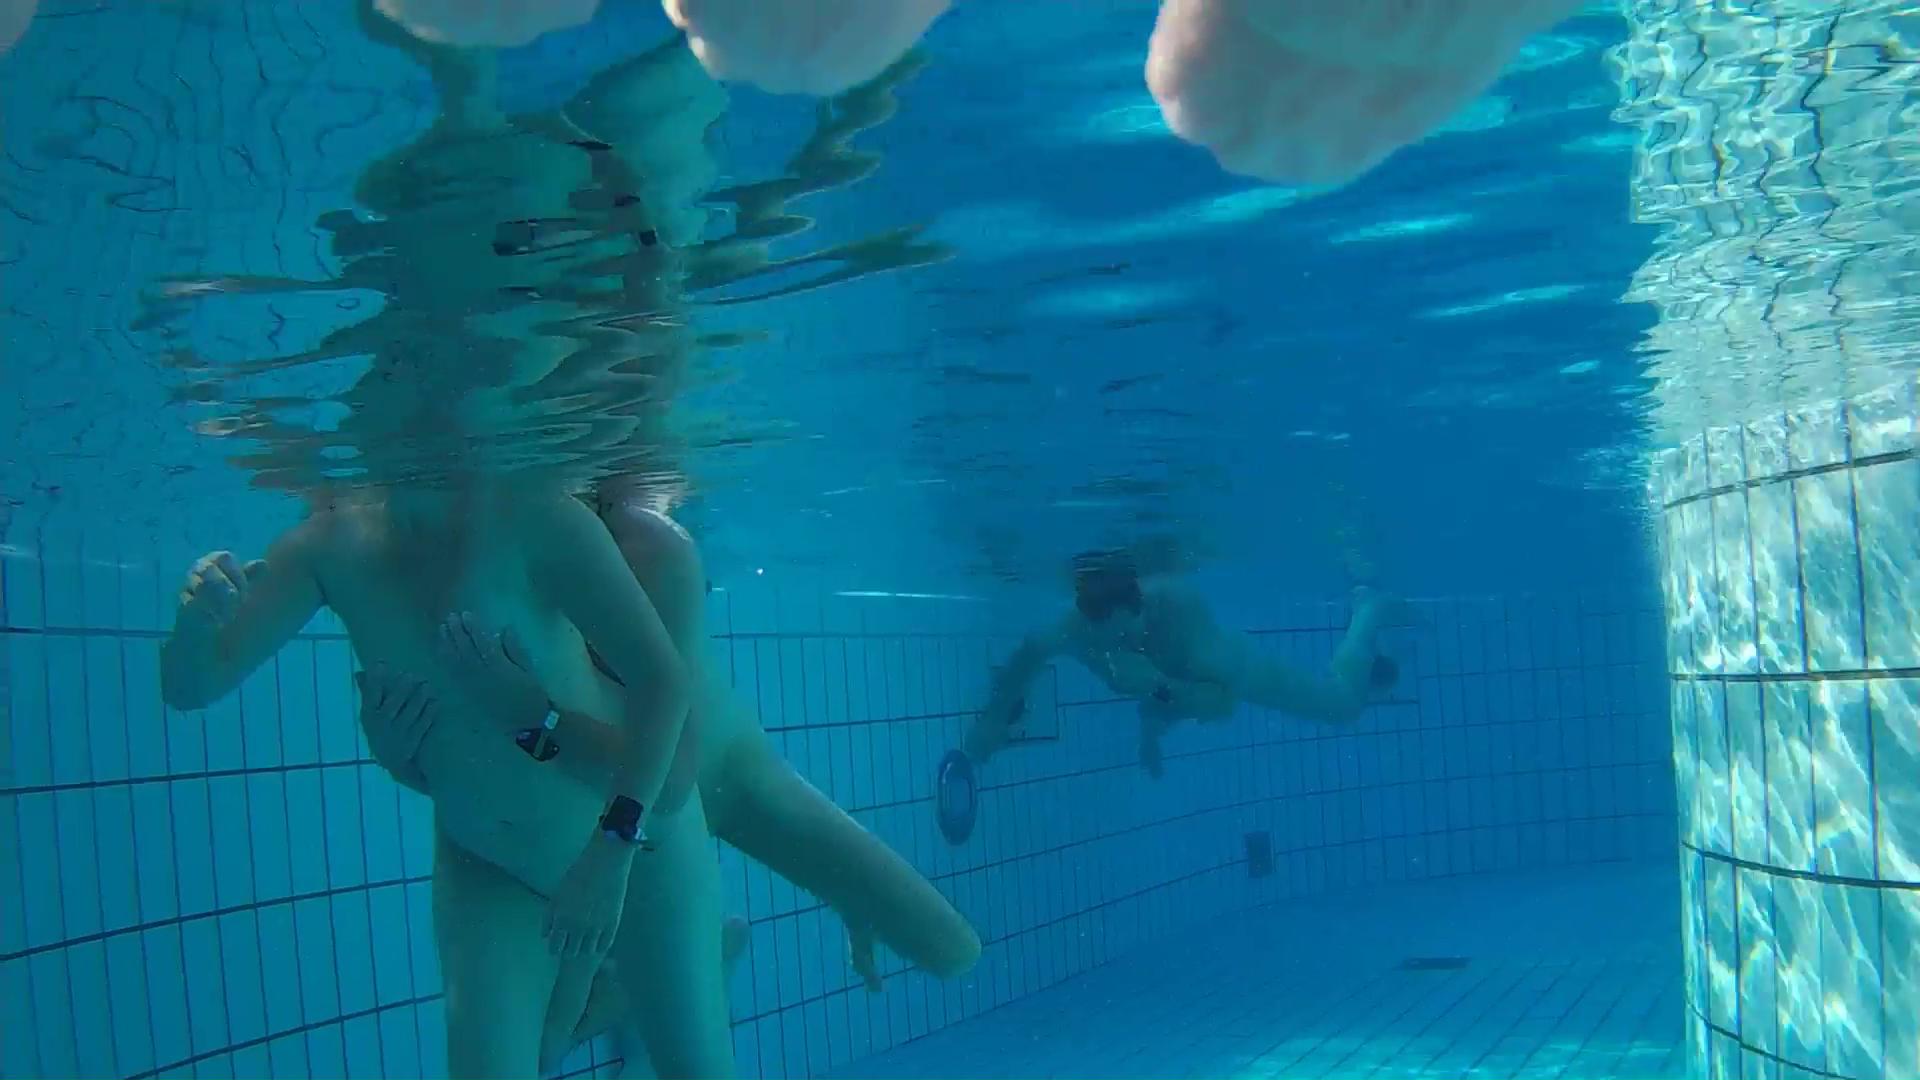 Underwater voyeur in sauna pool 6